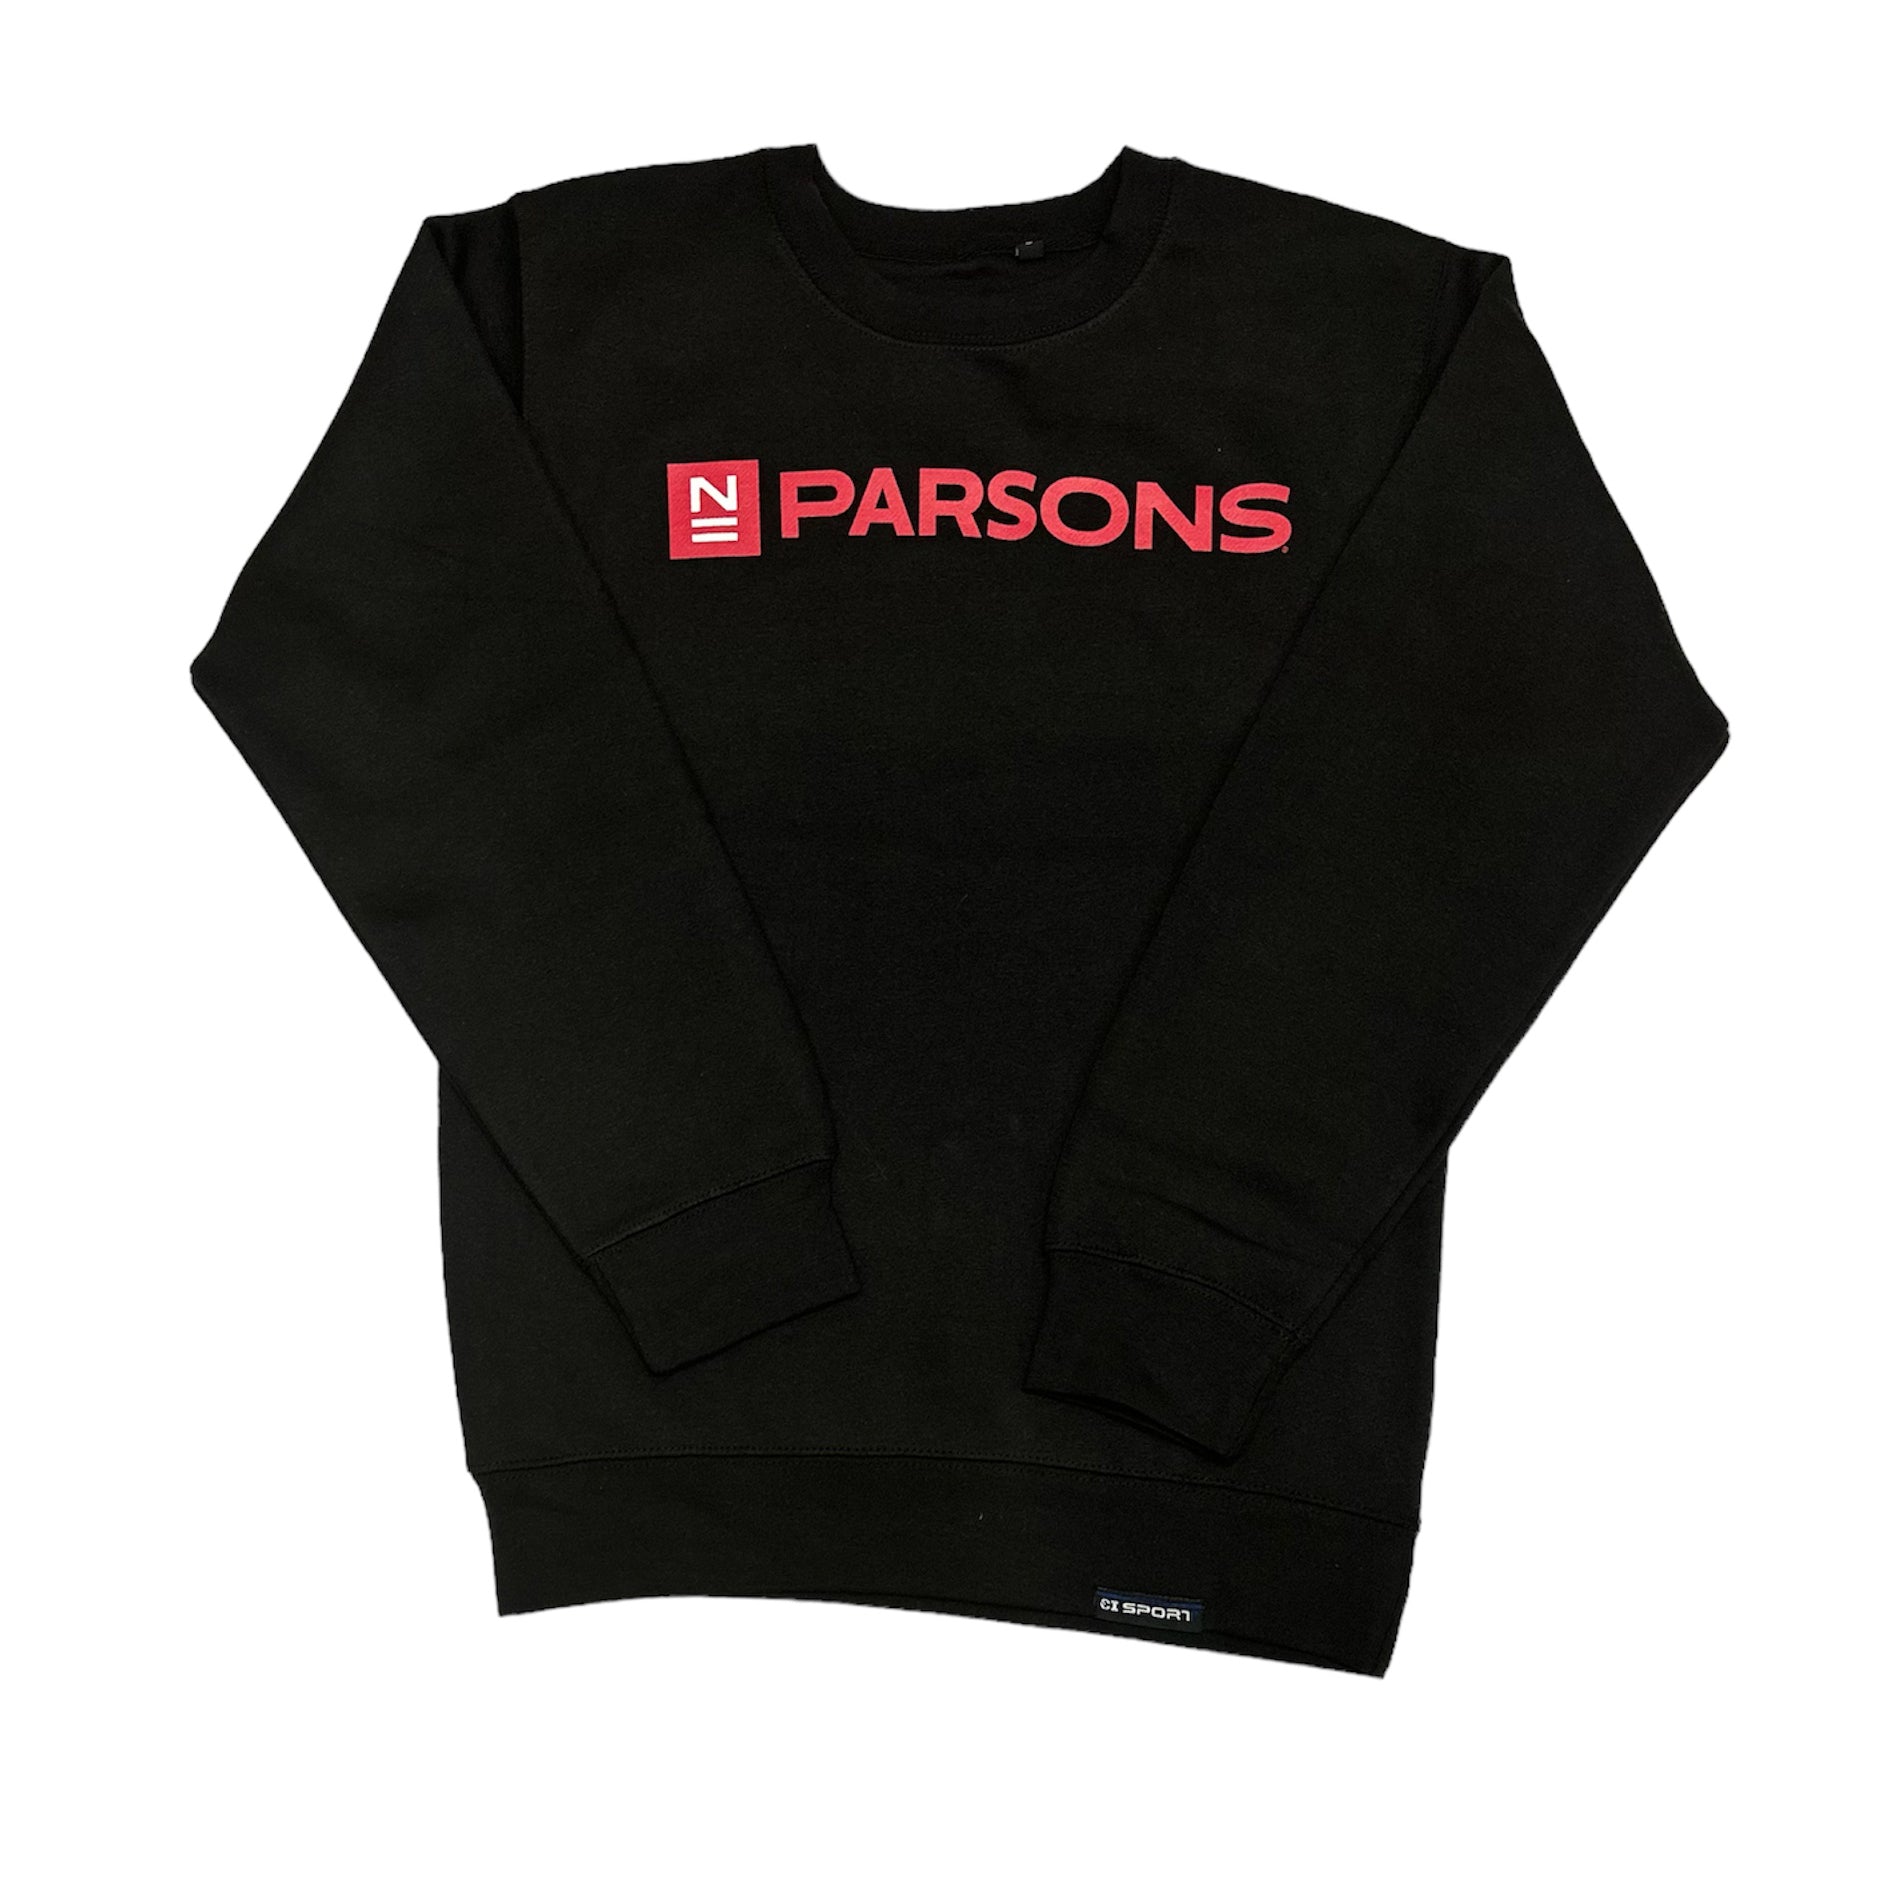 N Parsons Crewneck Sweatshirt